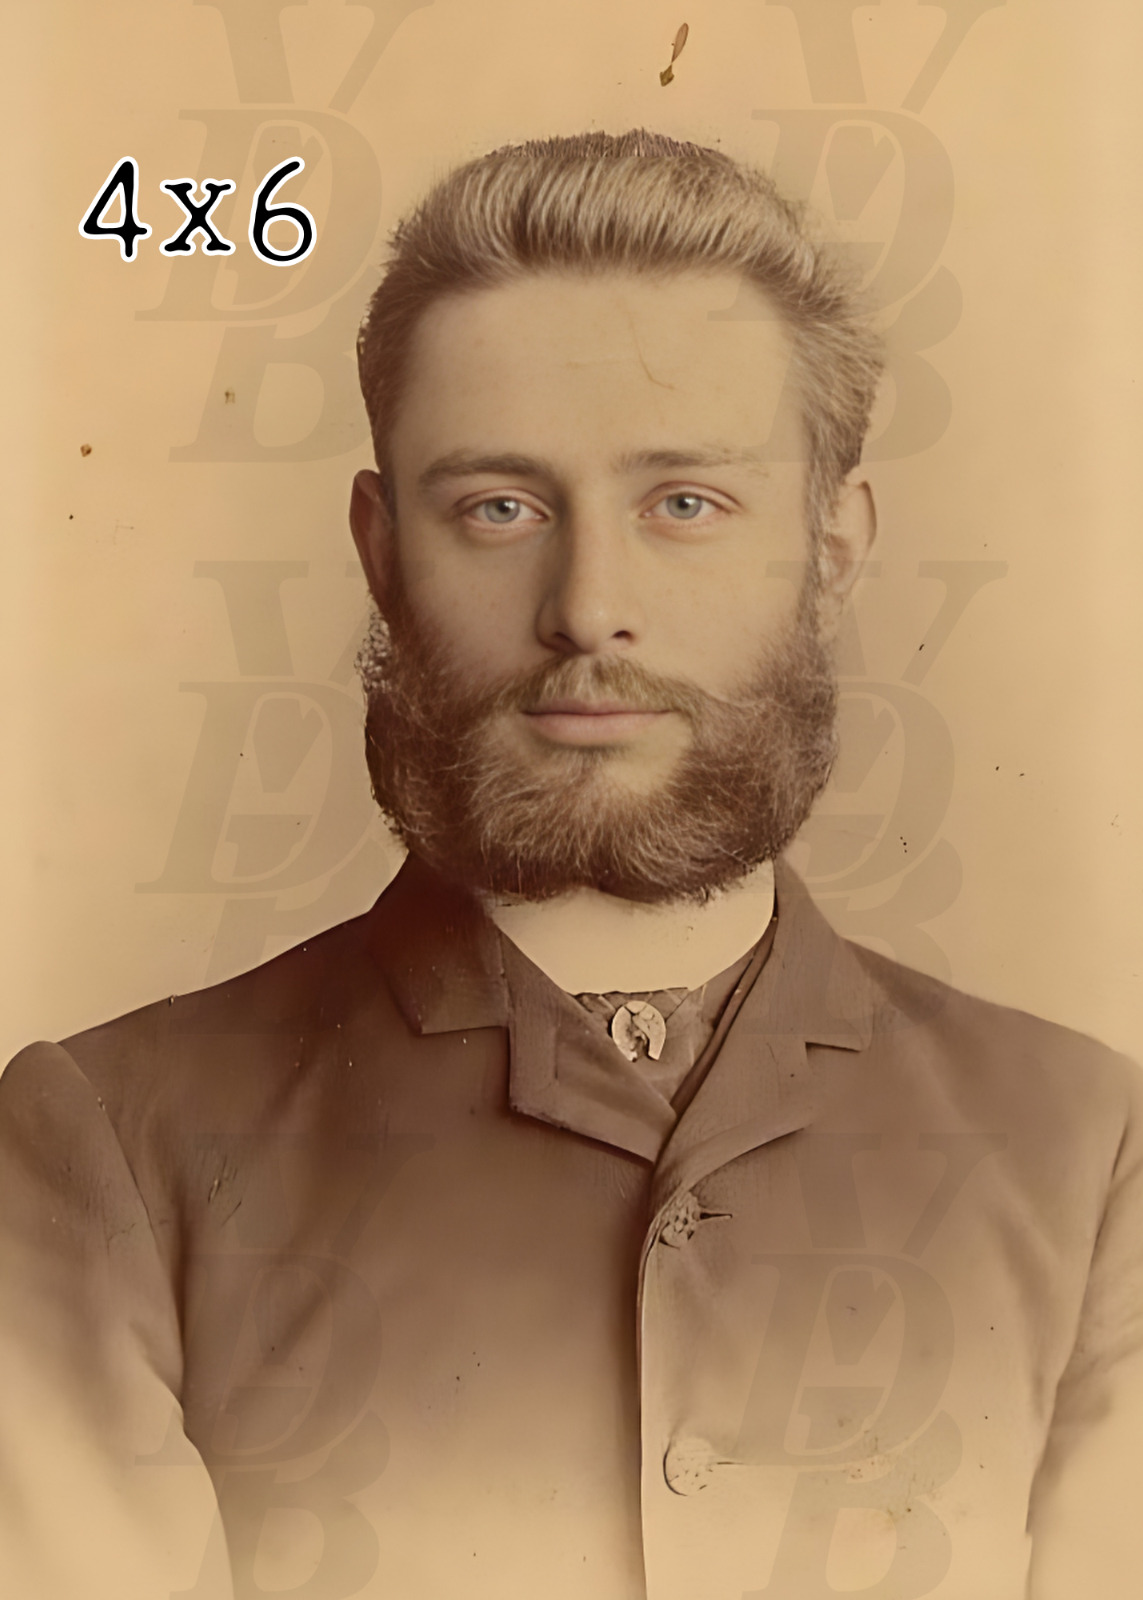 Antique Male Portrait Photograph 1890s Handsome Bearded Beau Photo 4 x 6